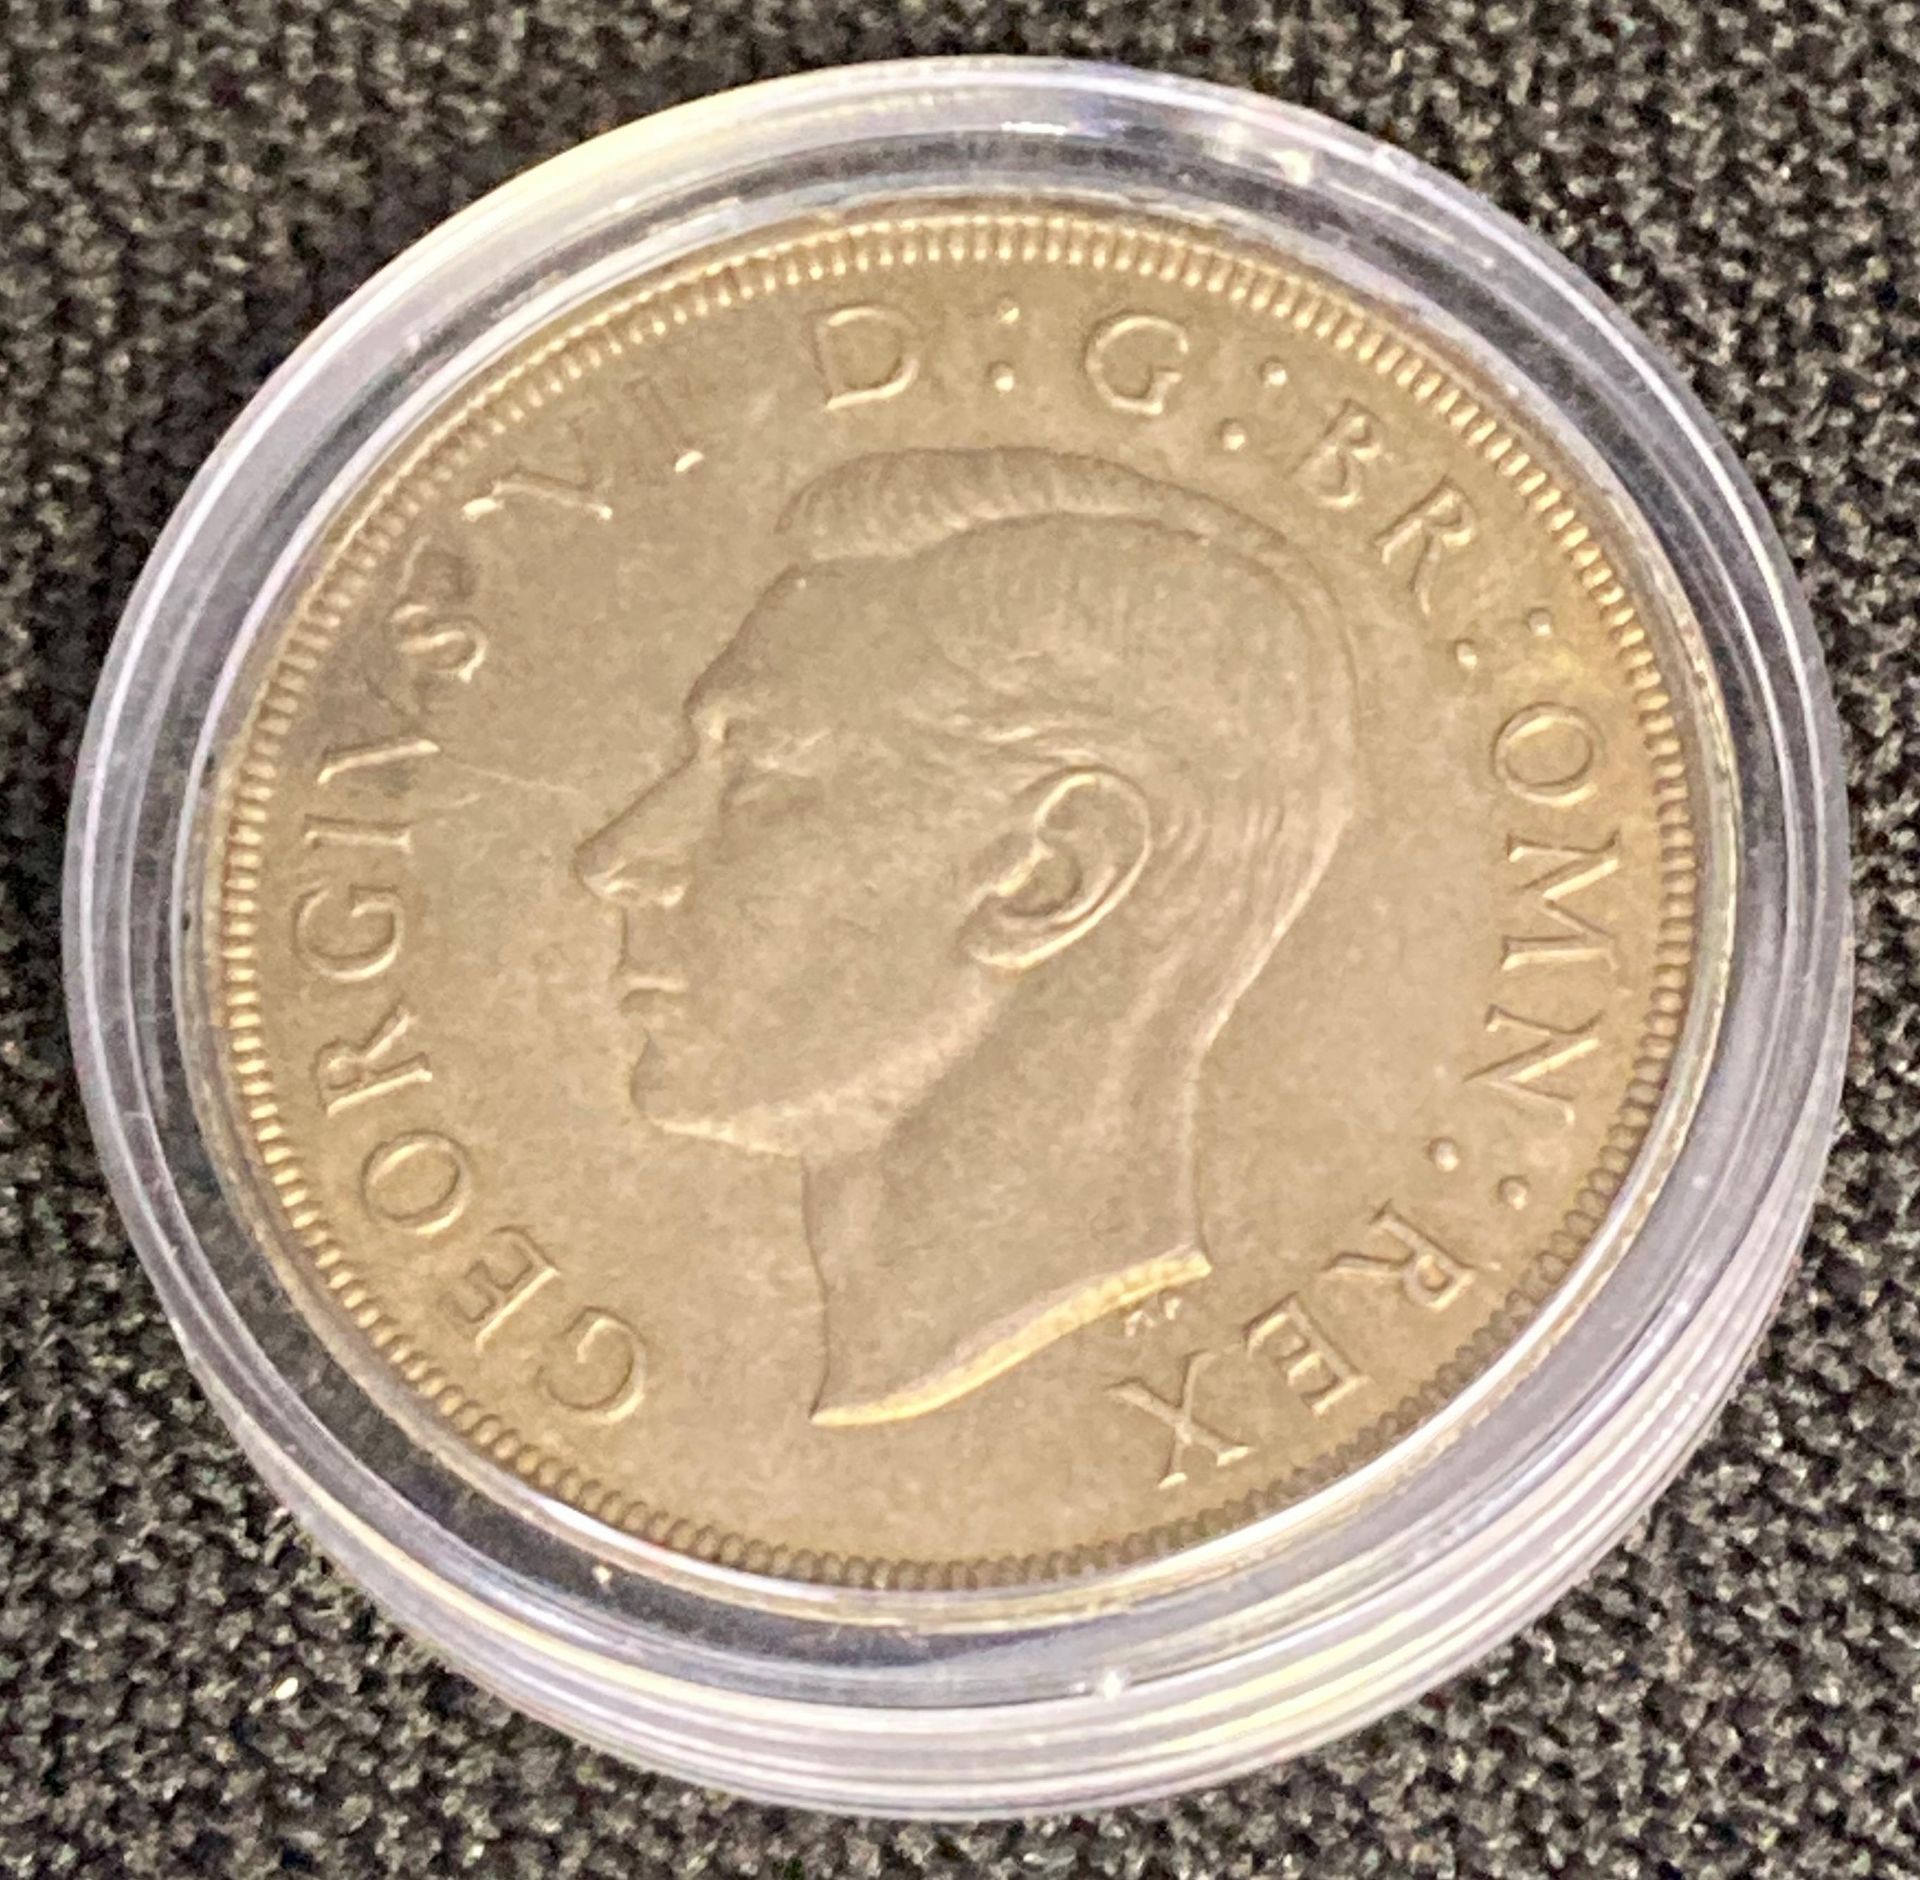 1937 George VI Crown coin